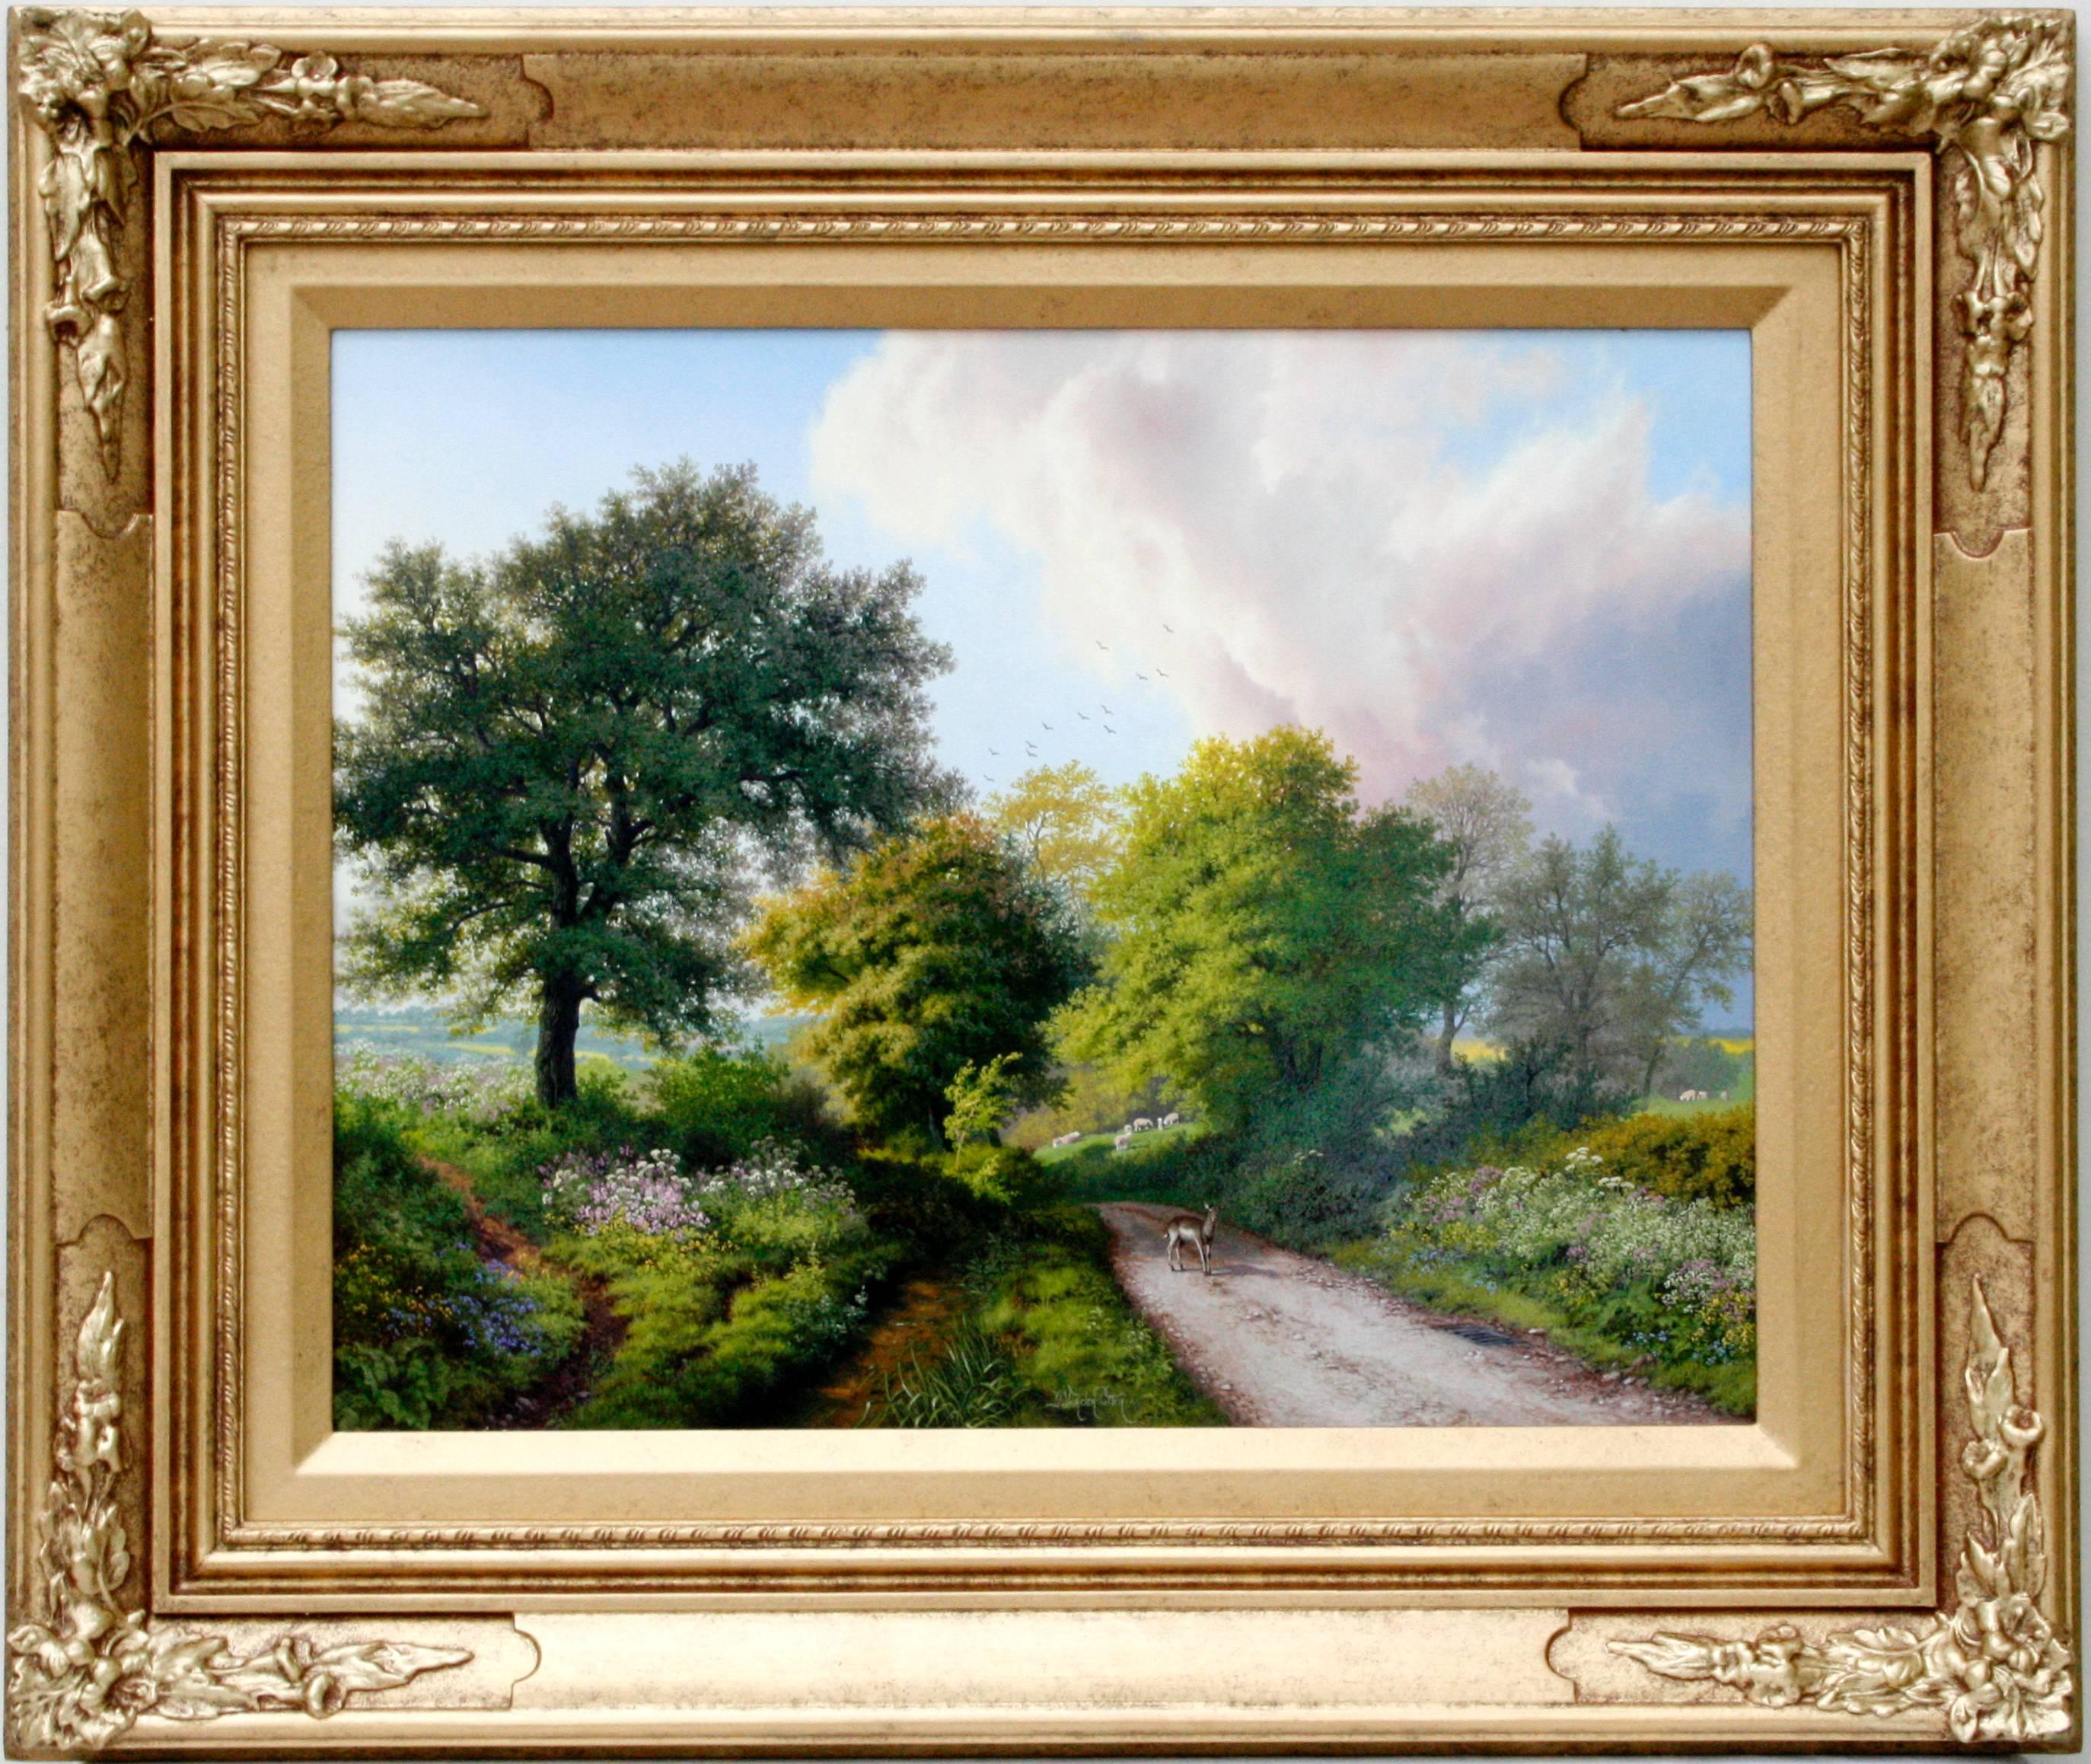 Daniel Van Der Putten Landscape Painting - Road to Warwickshire in Spring